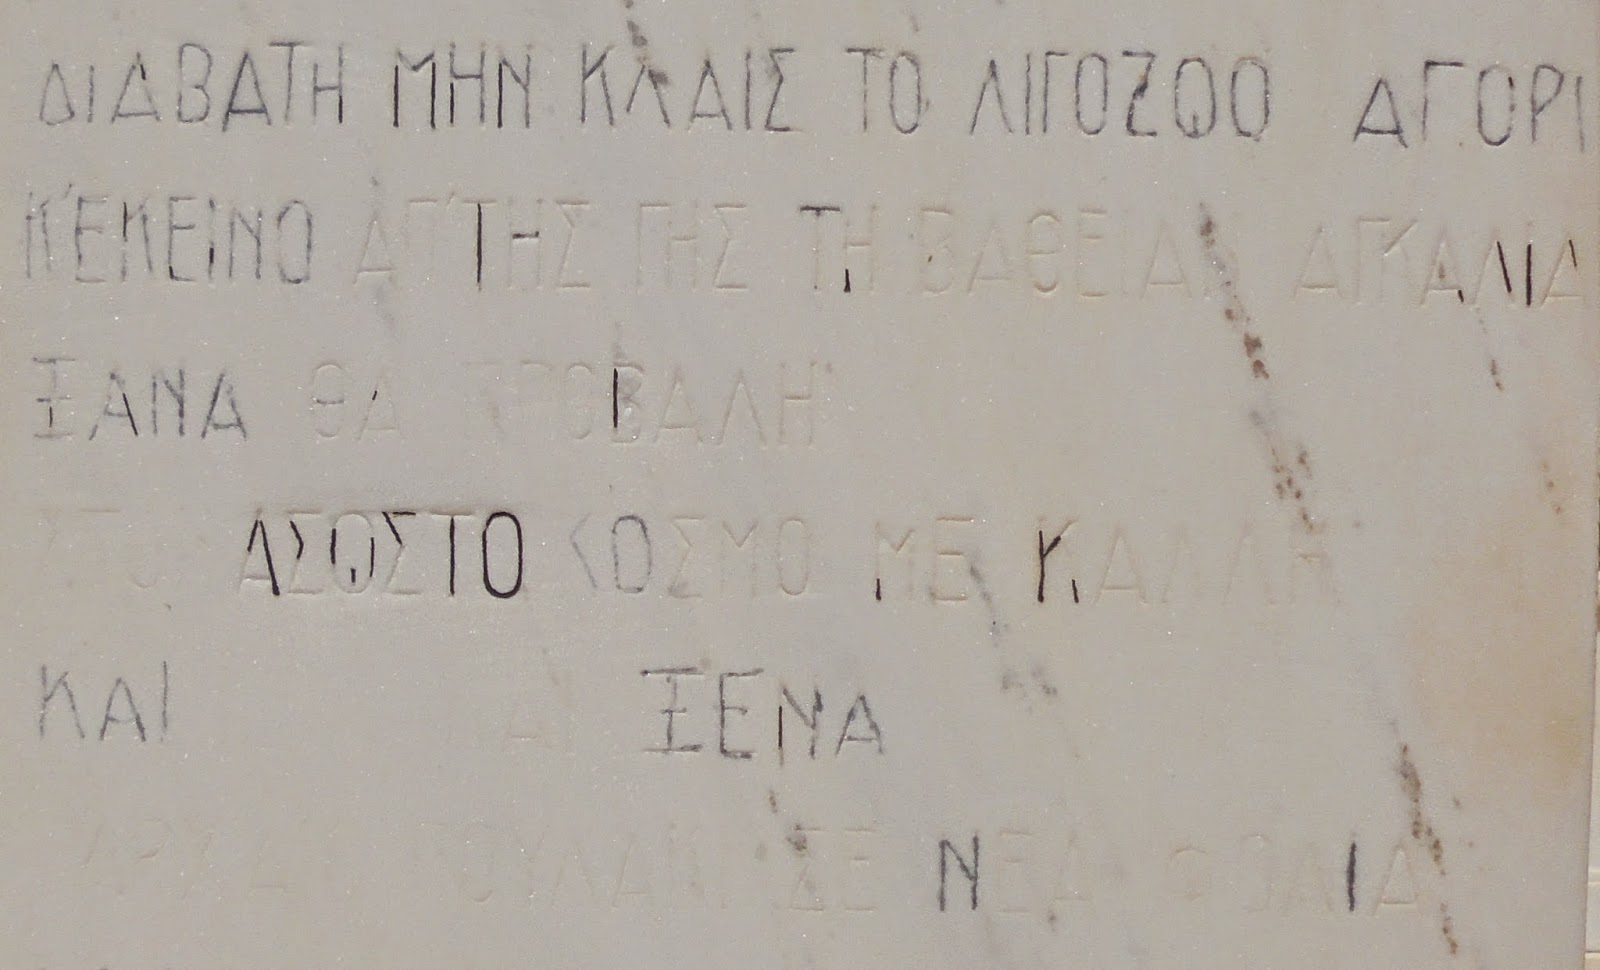 το ταφικό μνημείο του οίκου Ευστράτιου Κυδωνιέως στο νεκροταφείο της Άνδρου